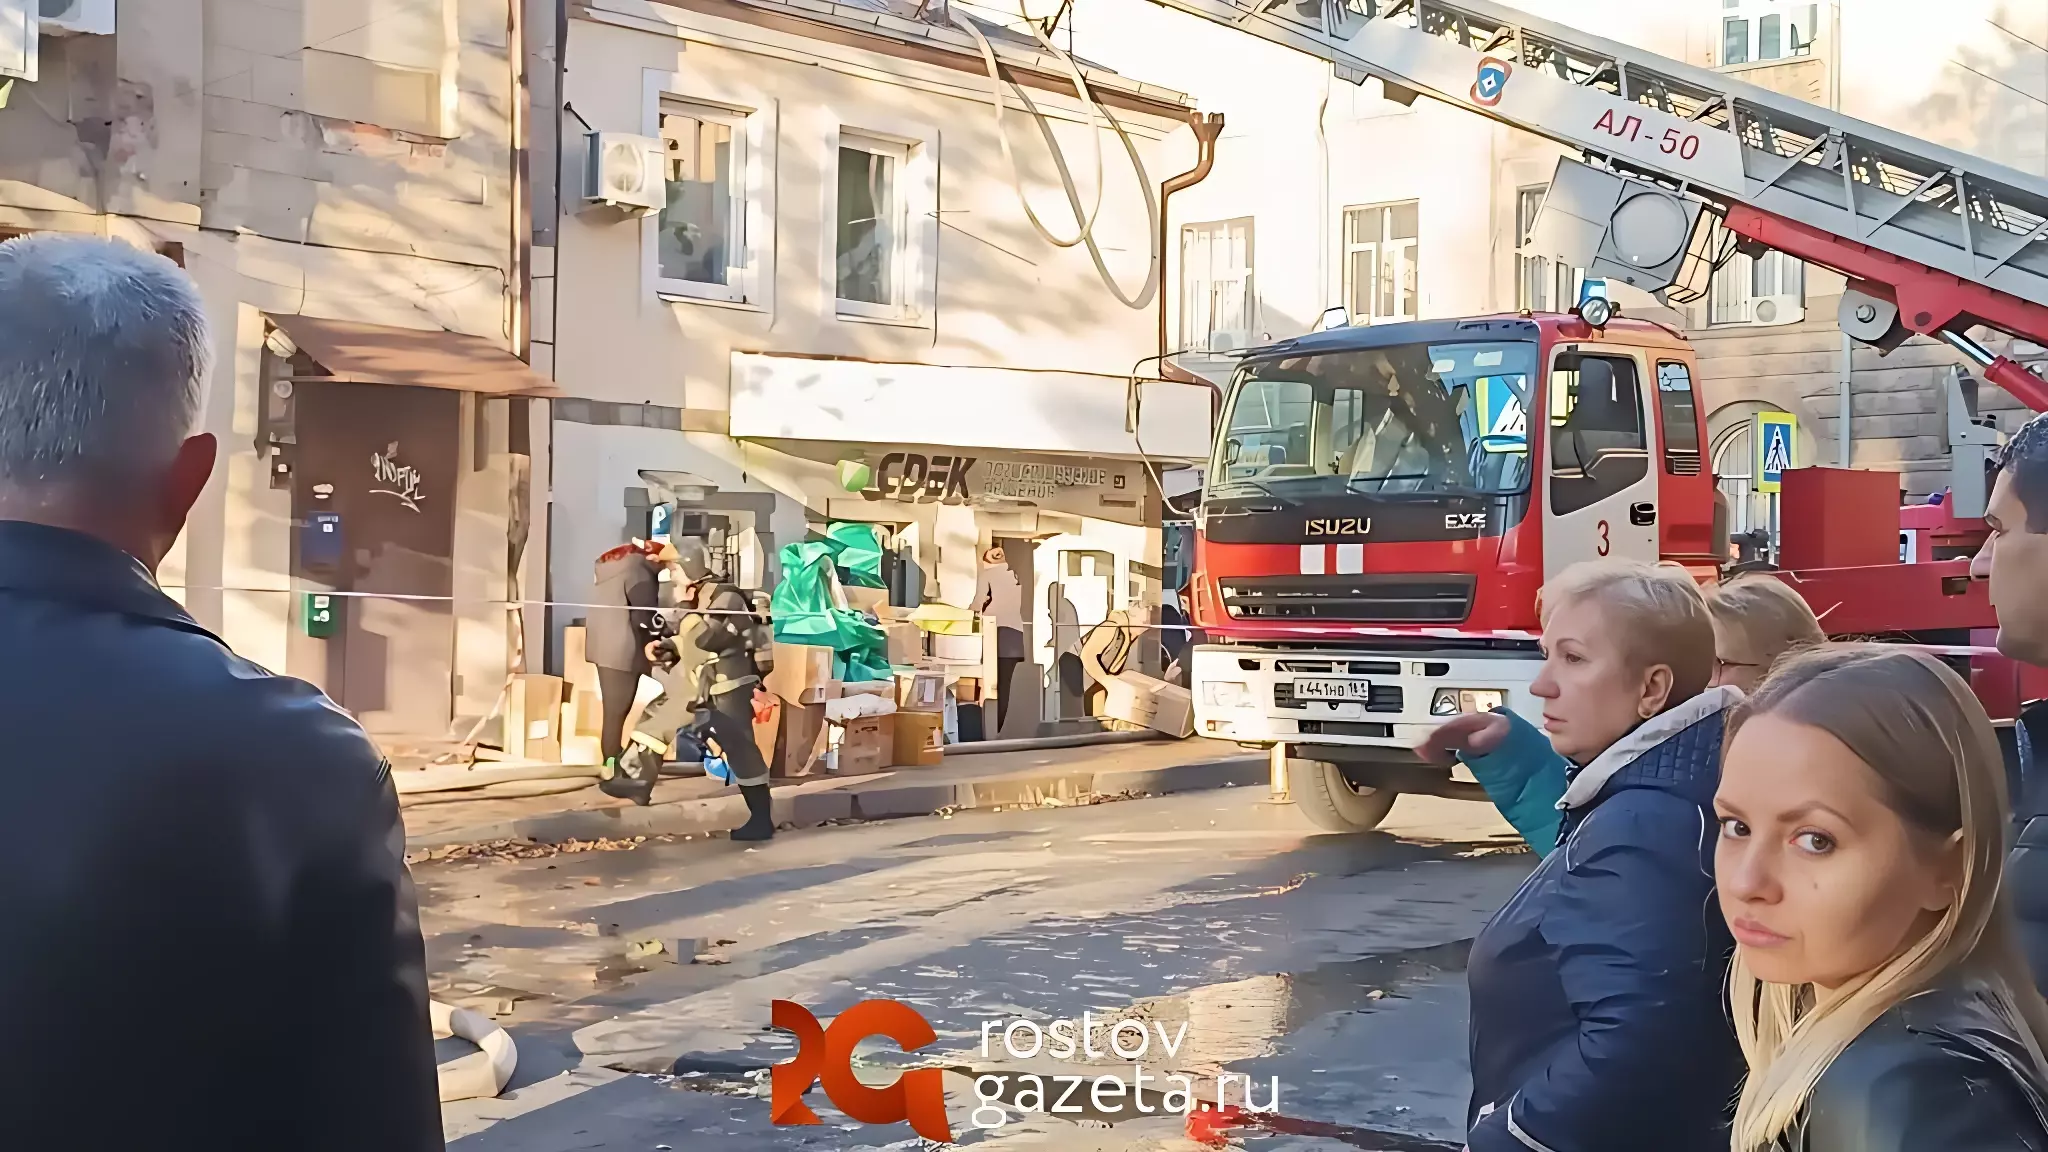 В Ростове пожар спровоцировал огромные пробки в центре города